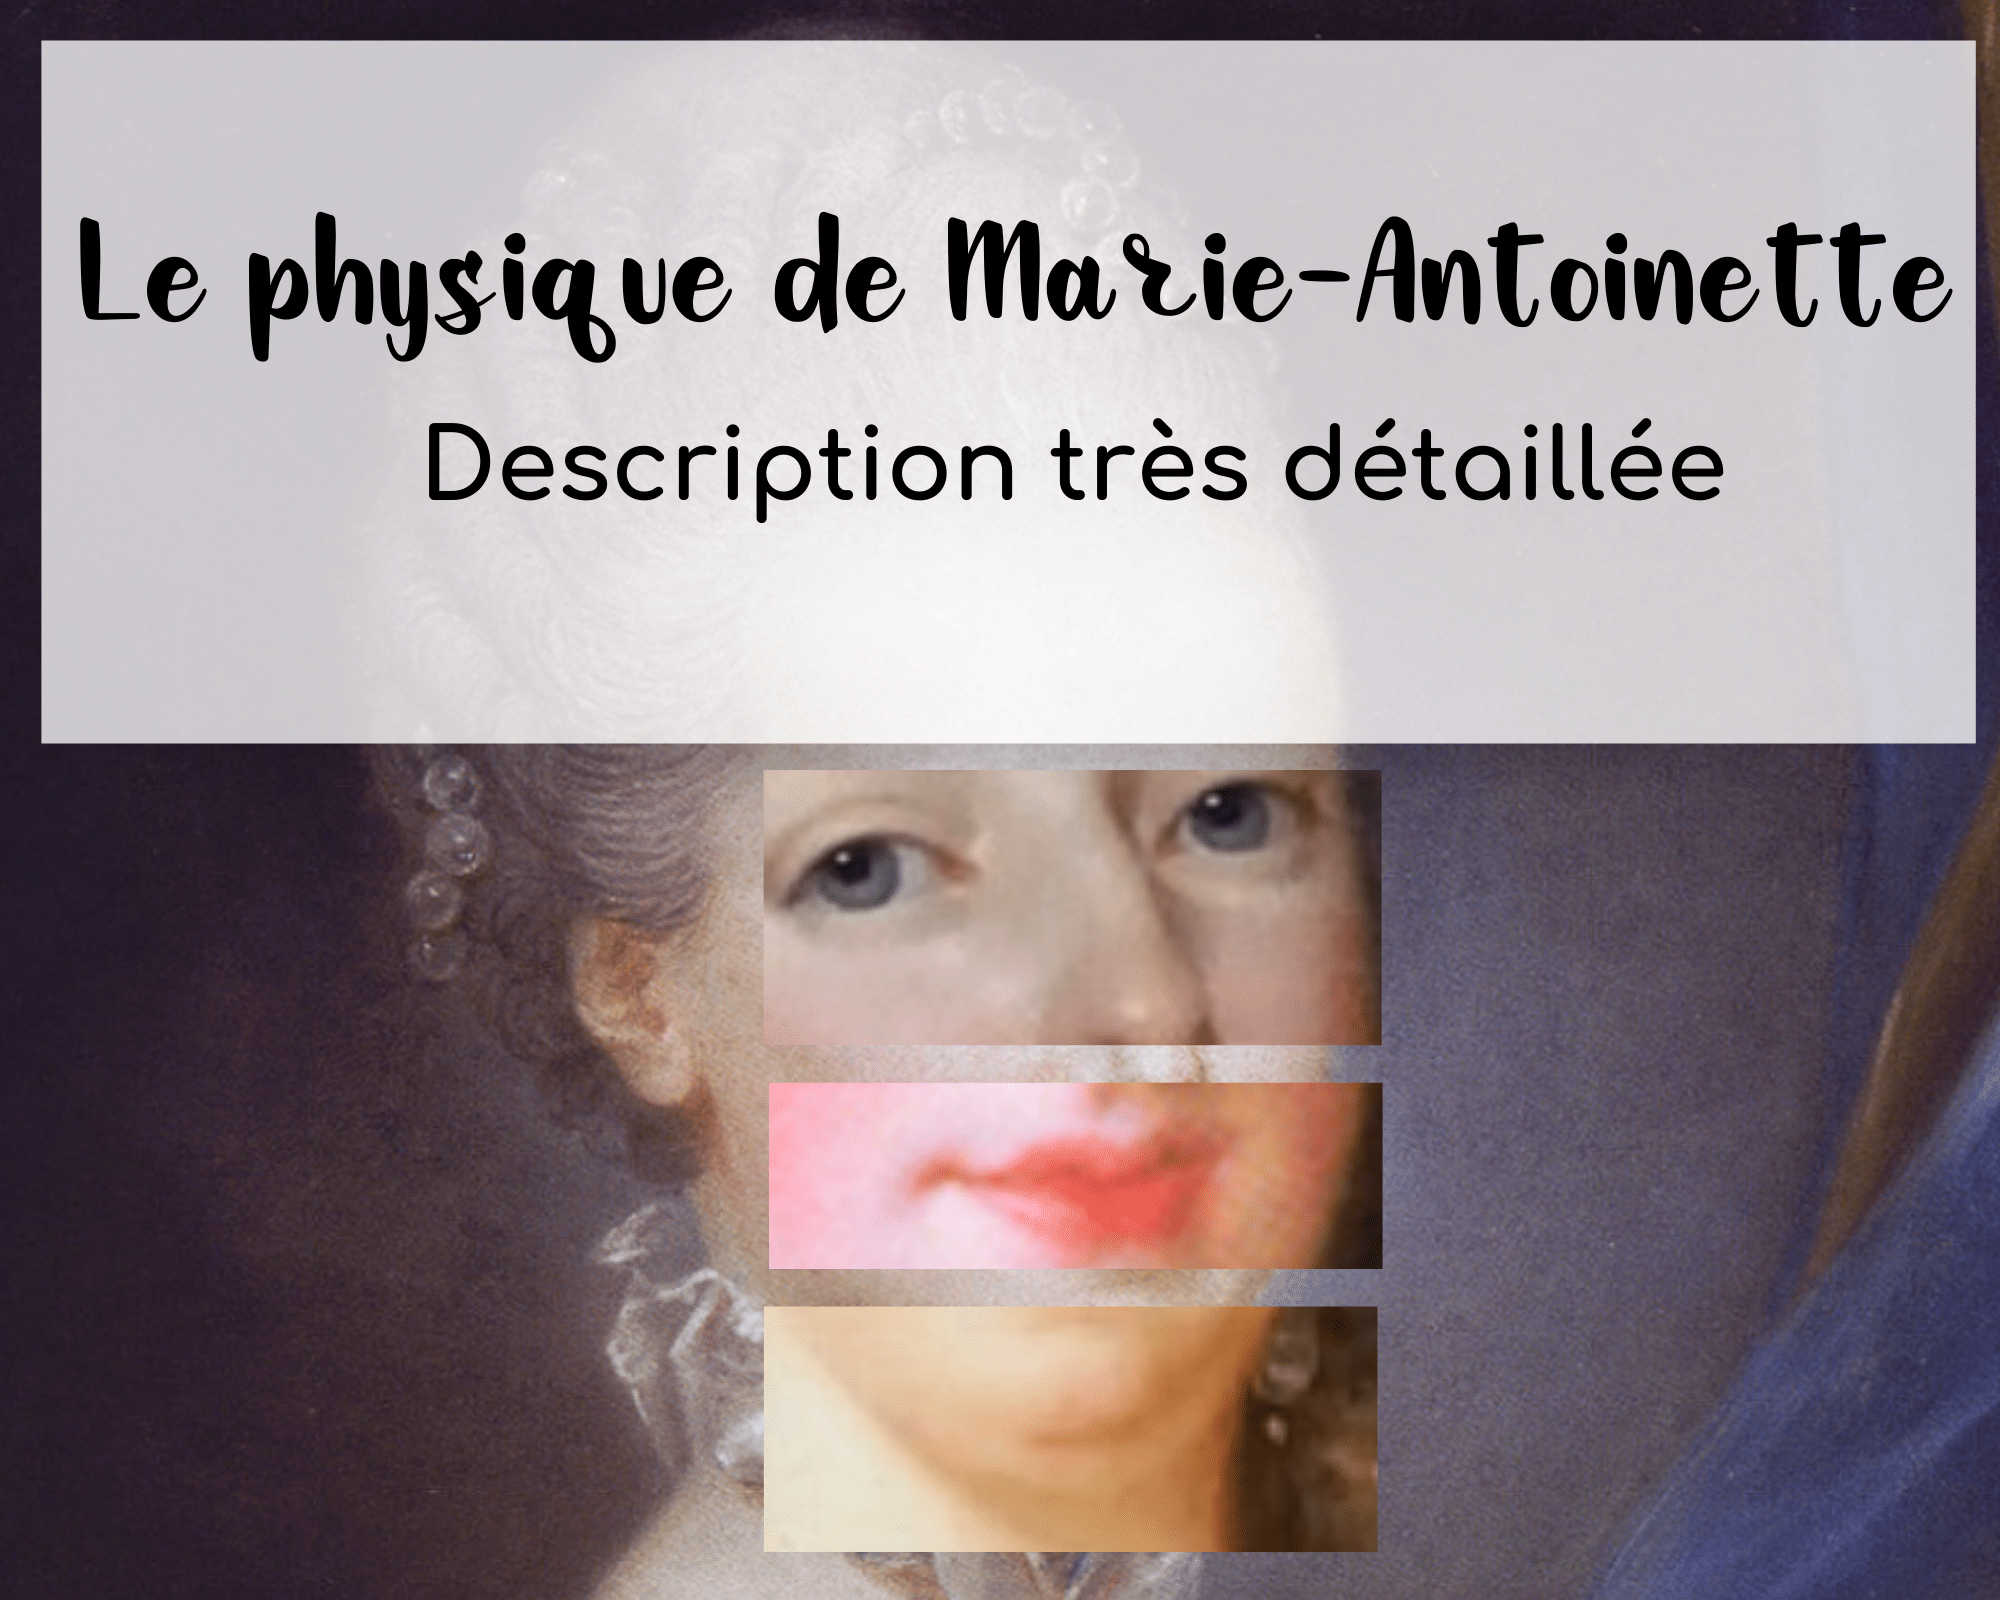 Le physique de Marie-Antoinette : description très détaillée